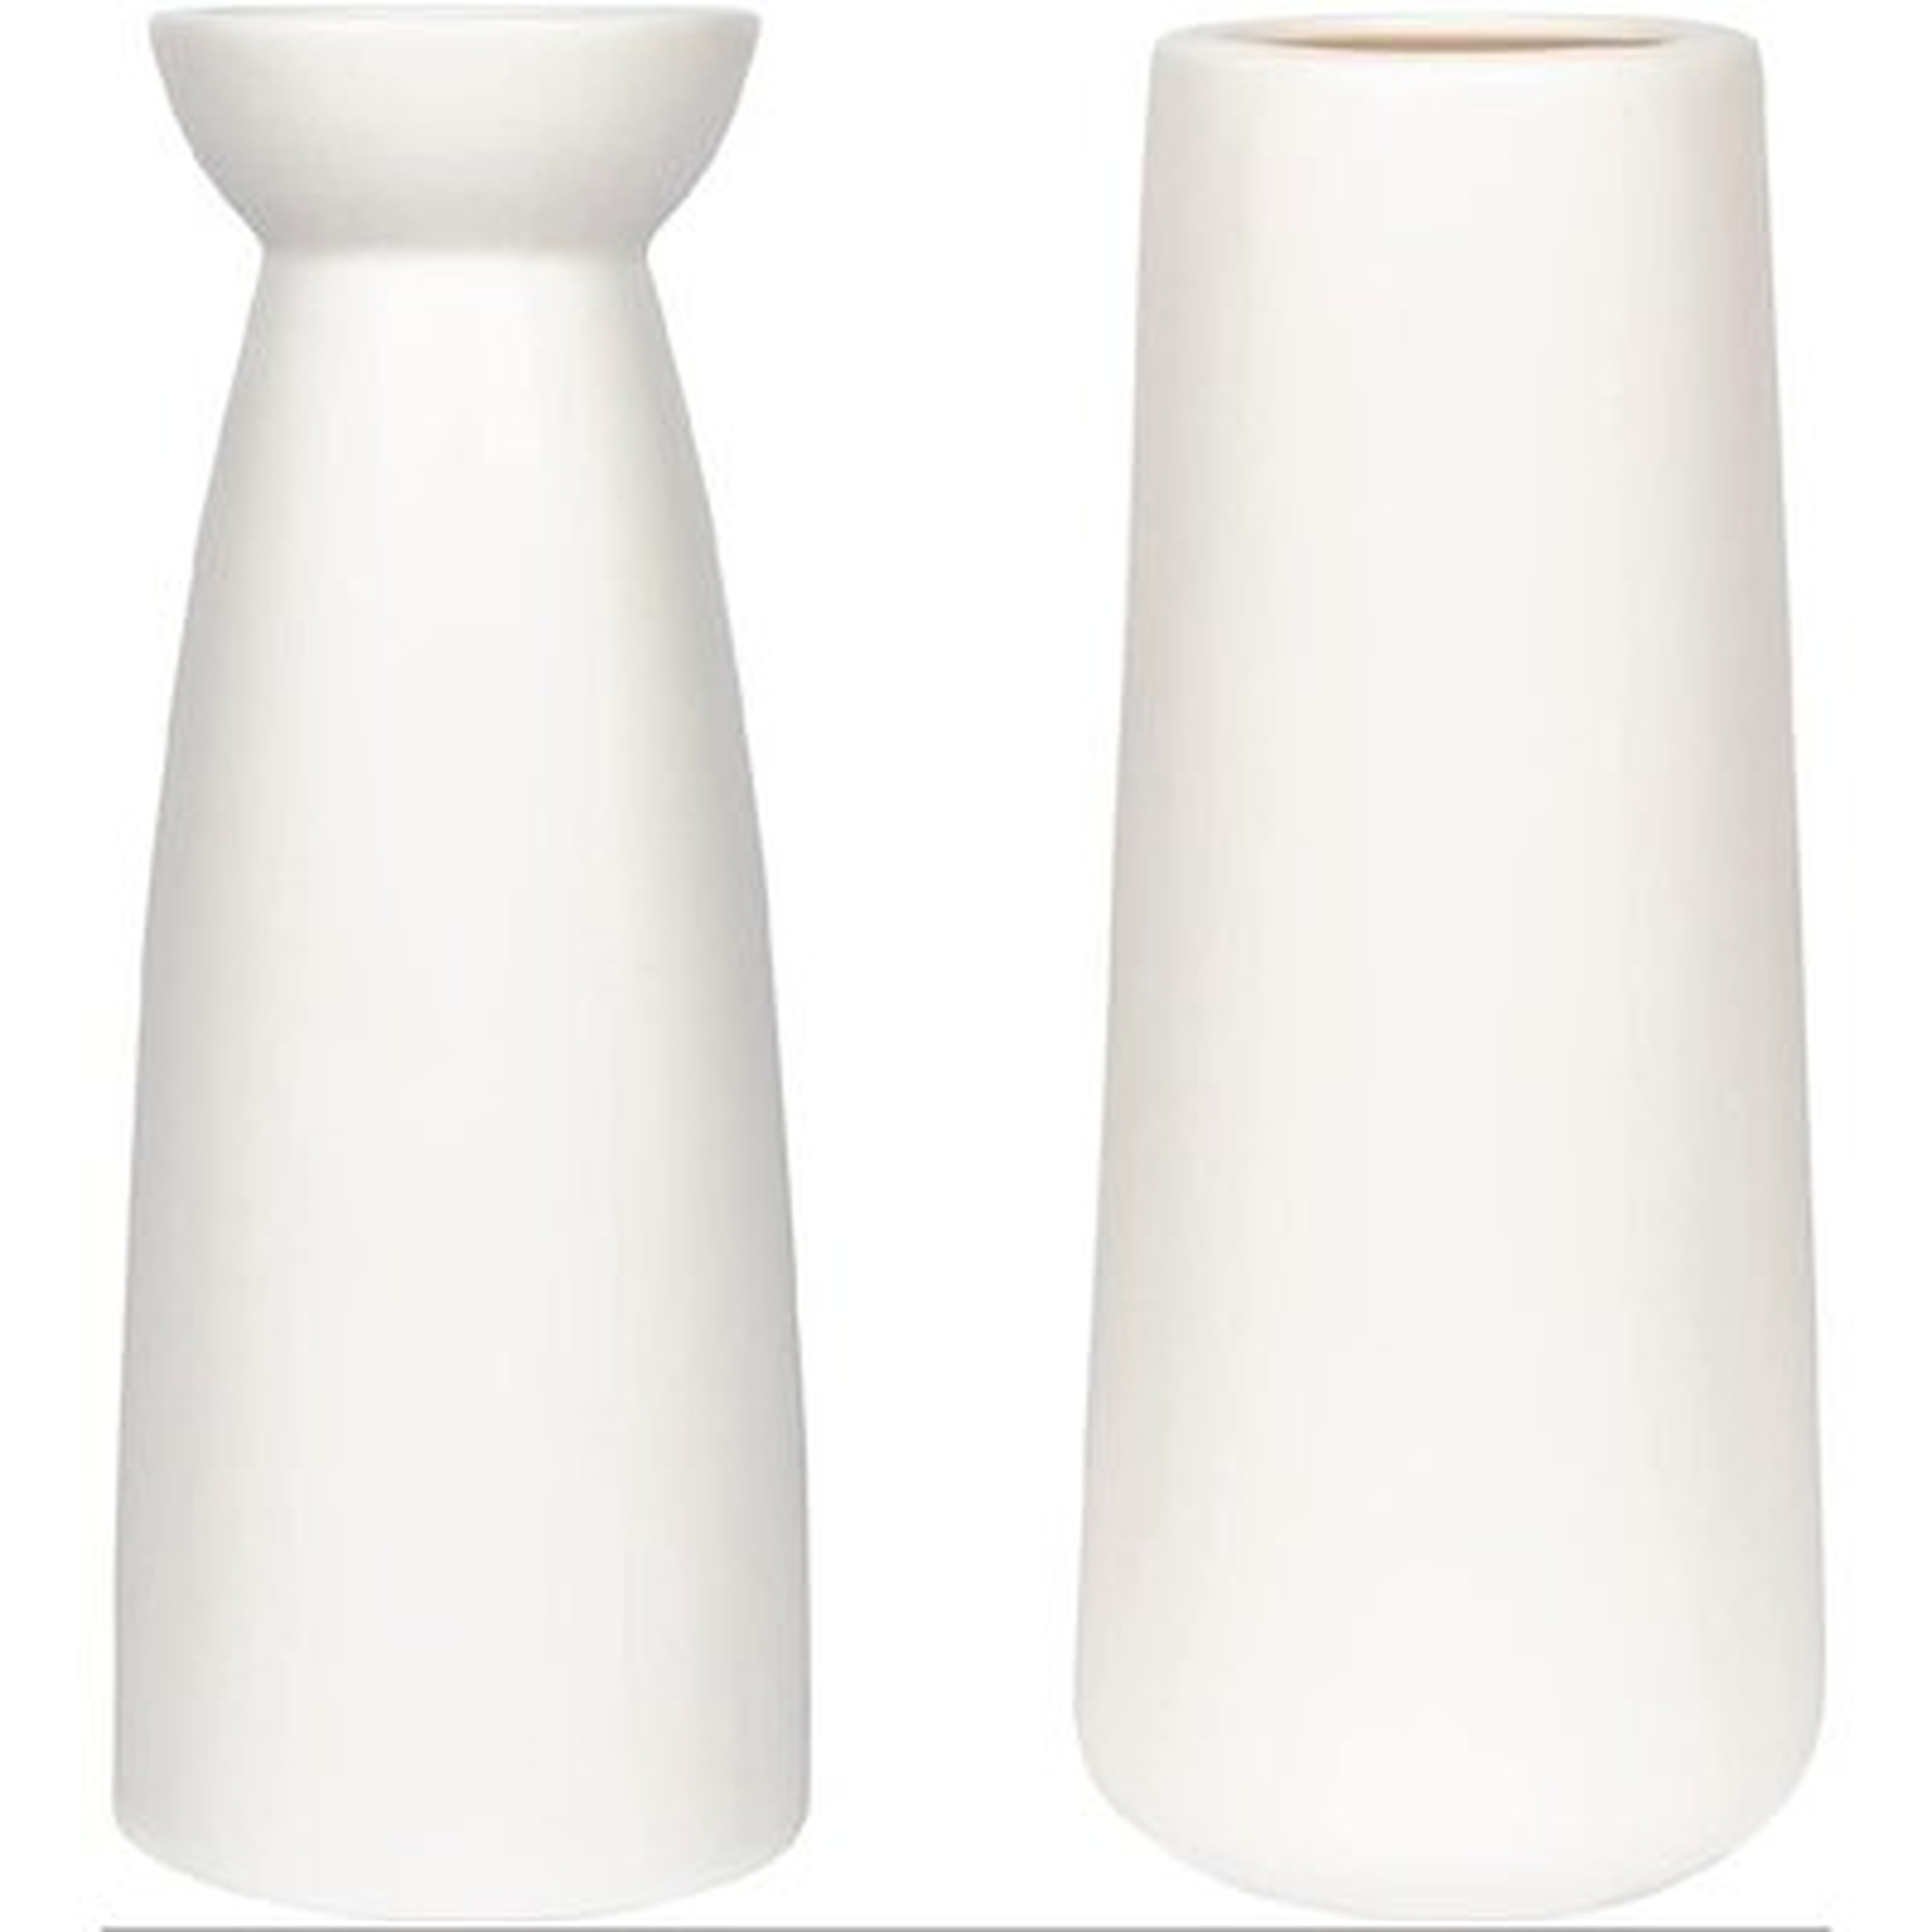 Ceramic Vase, White Vase, Vases For Flowers, White Ceramic Vase & Flower Vase(2 Packs) - Wayfair